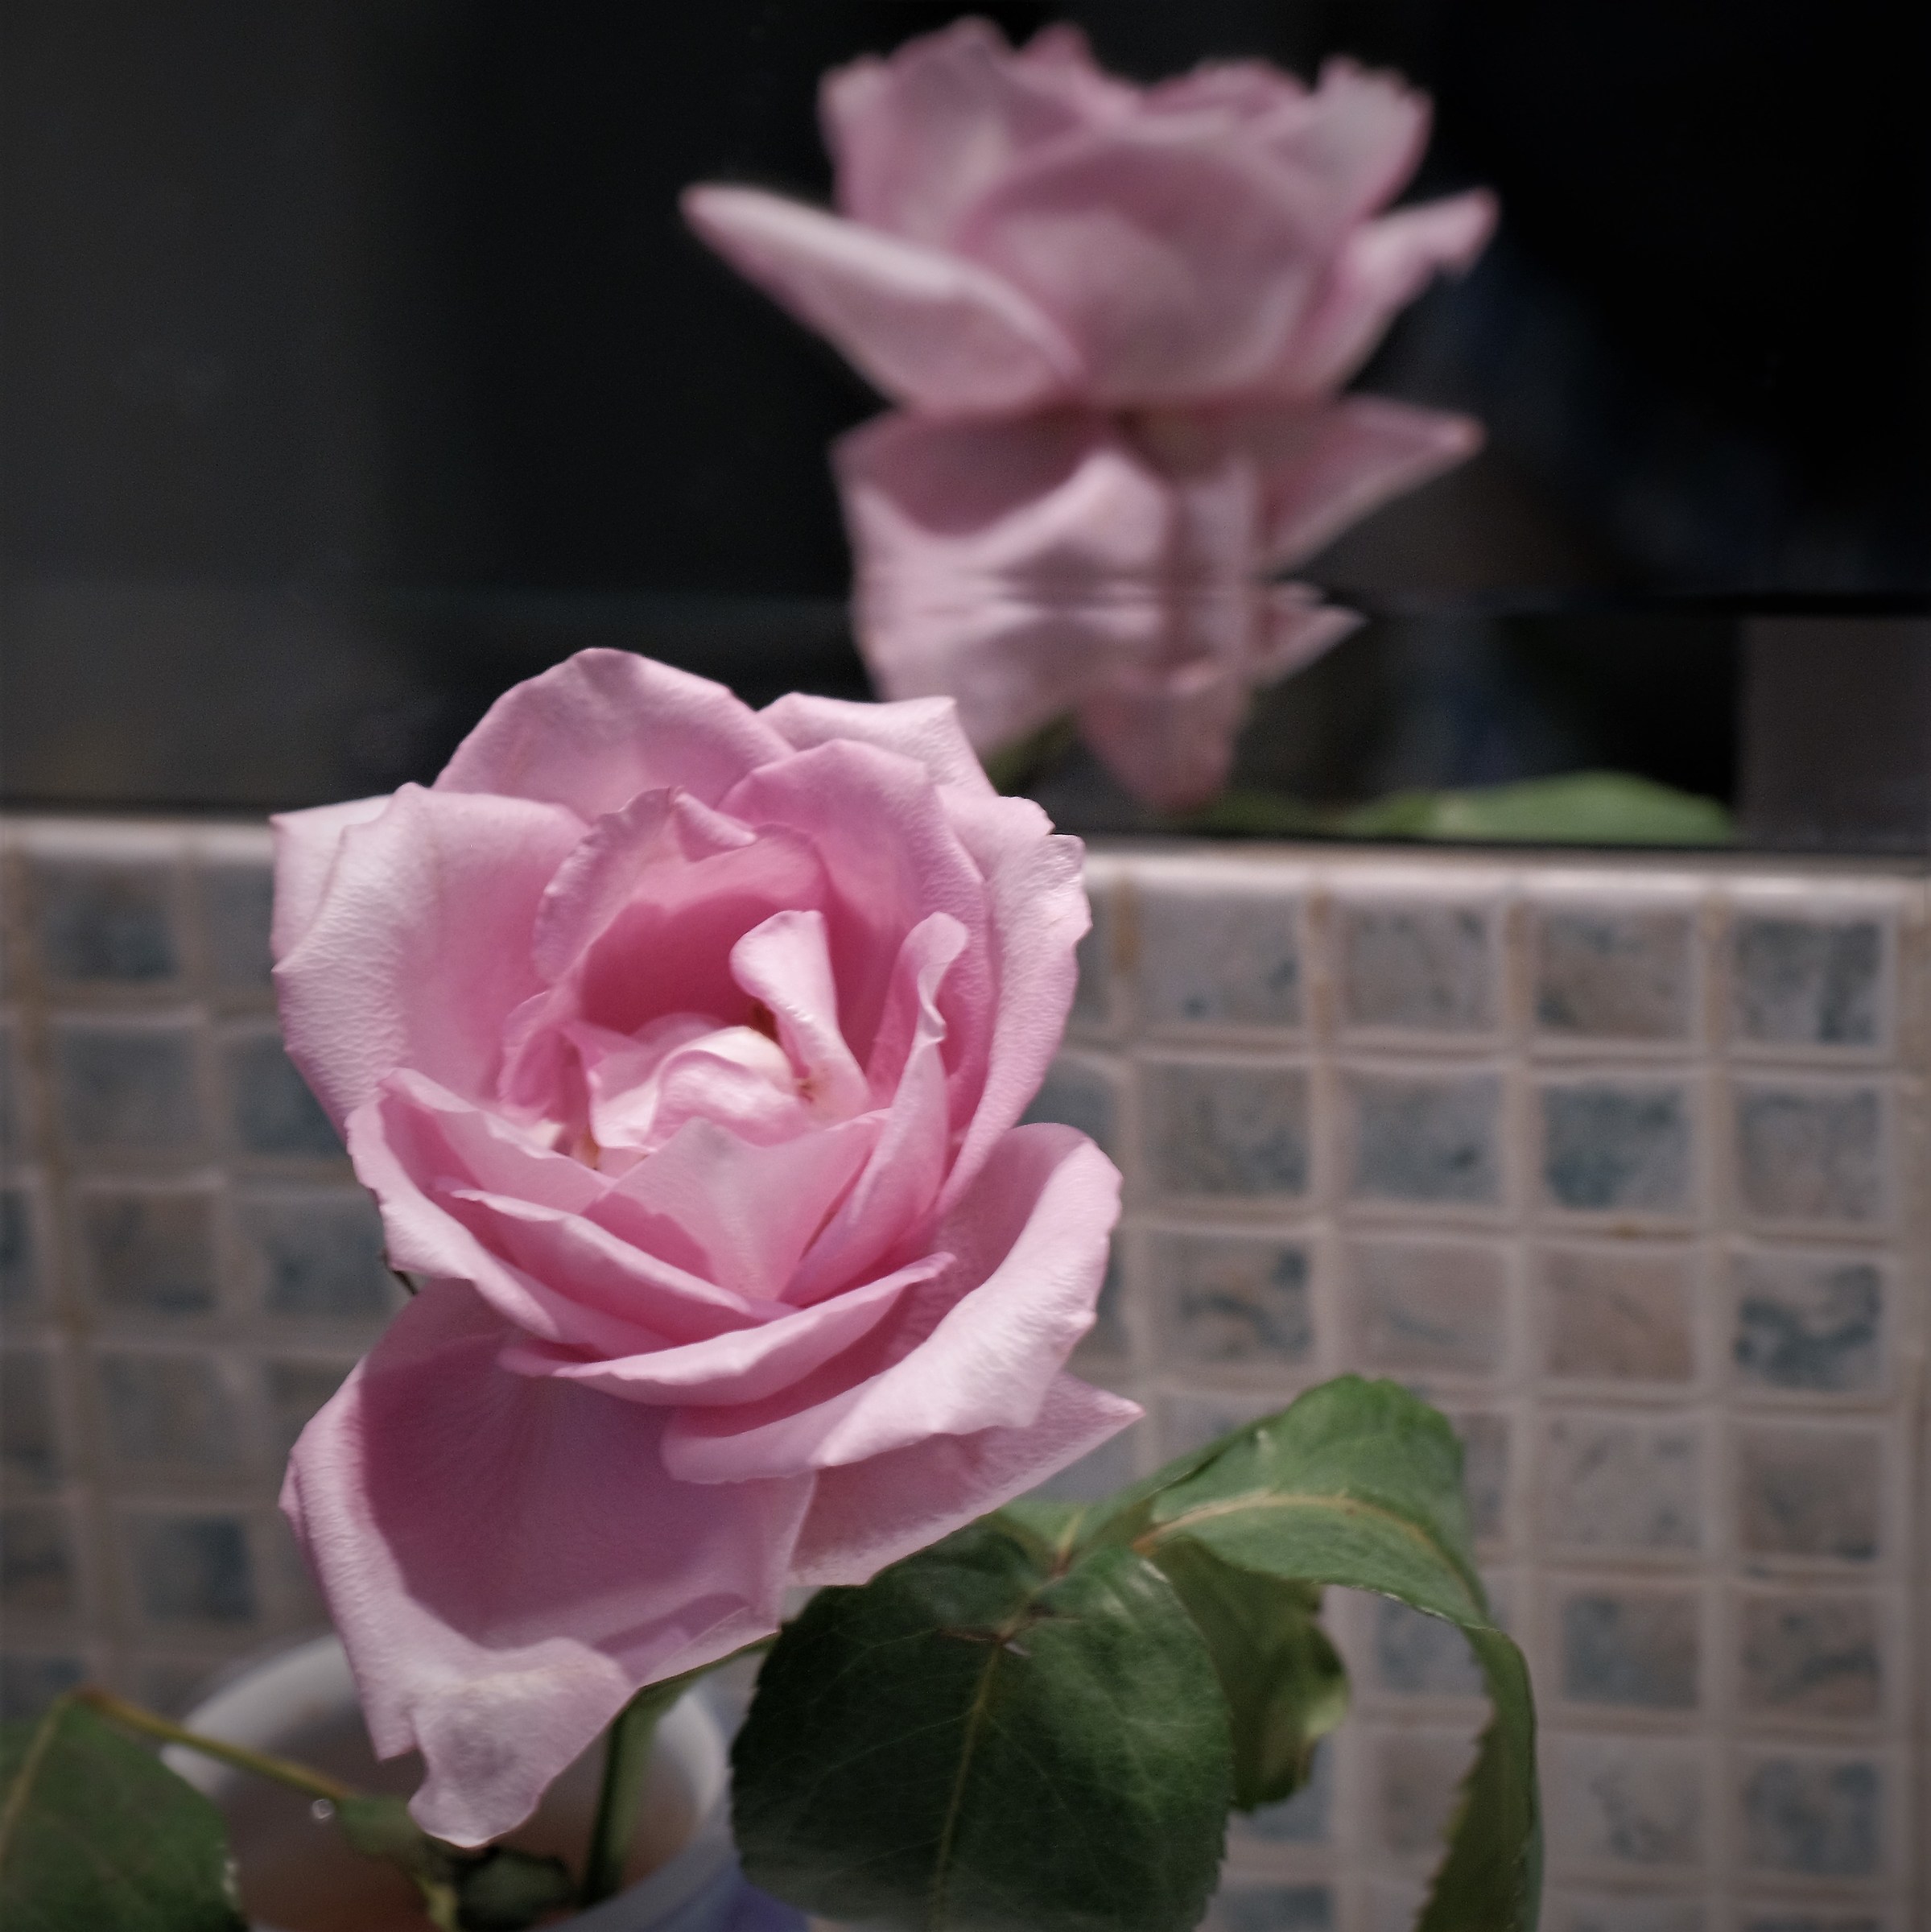 Nel mio bagno una rosa ed il suo riflesso...